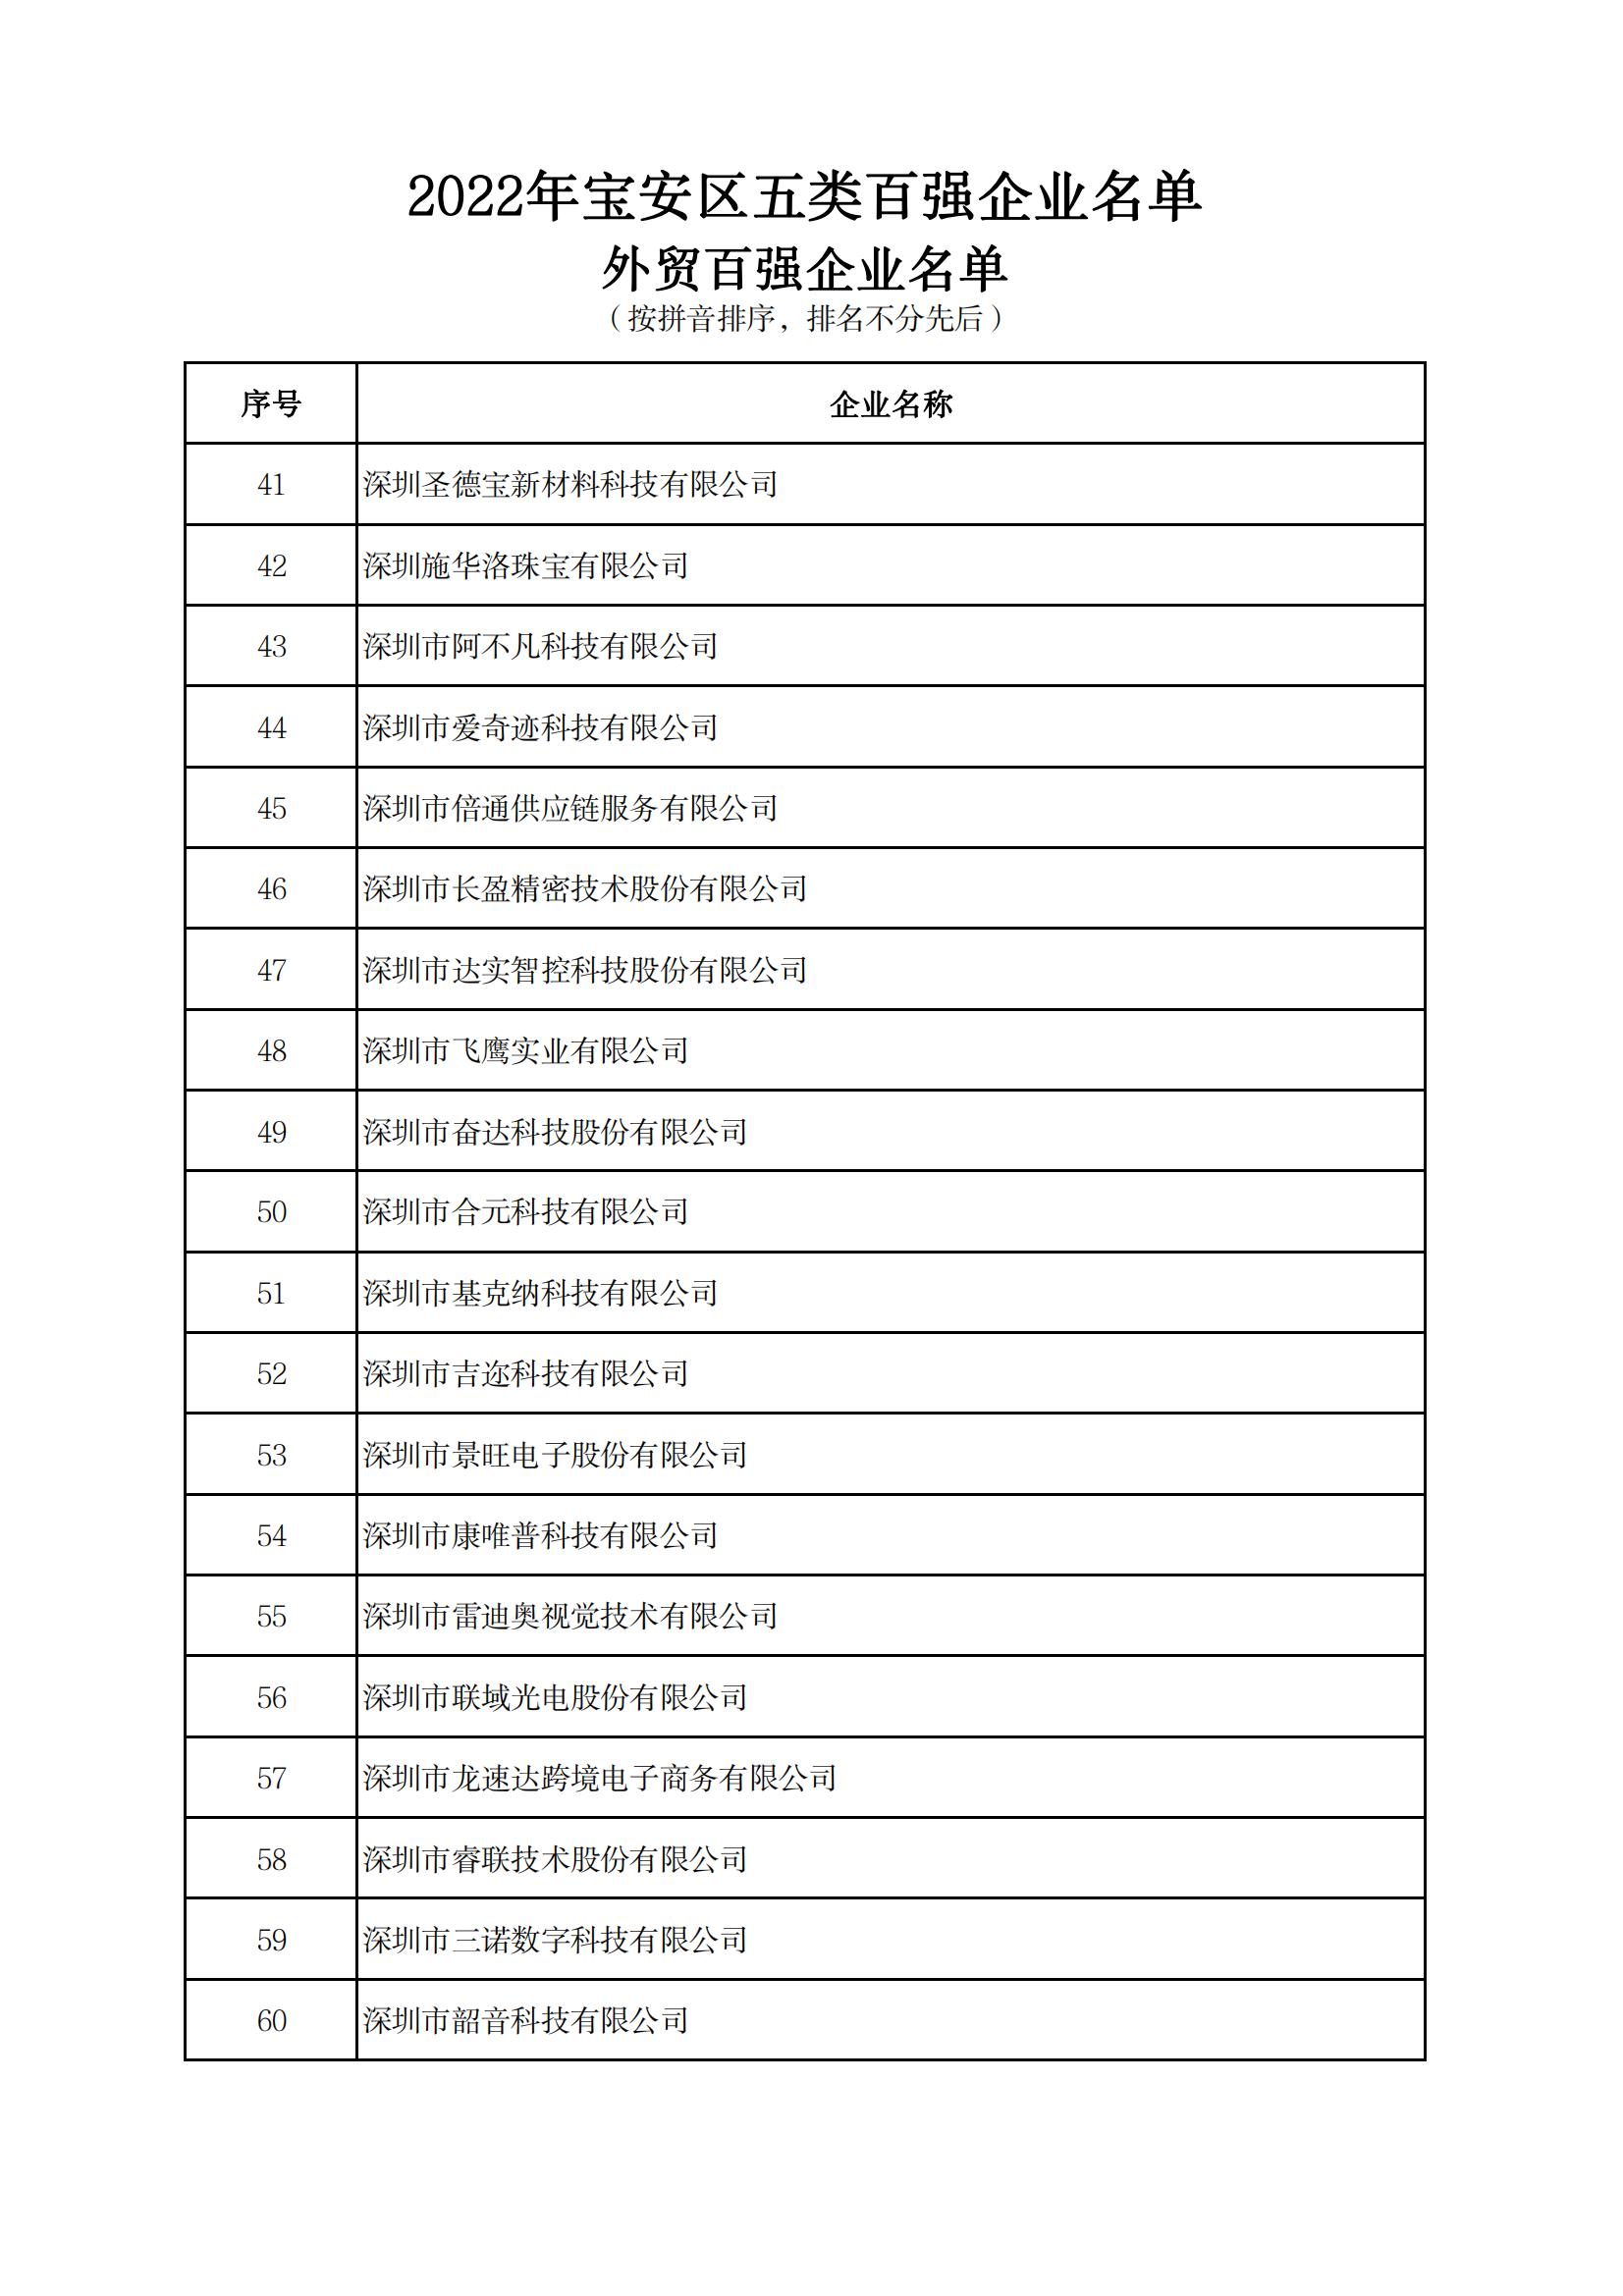 附件：2022年宝安区五类百强企业名单_17.jpg